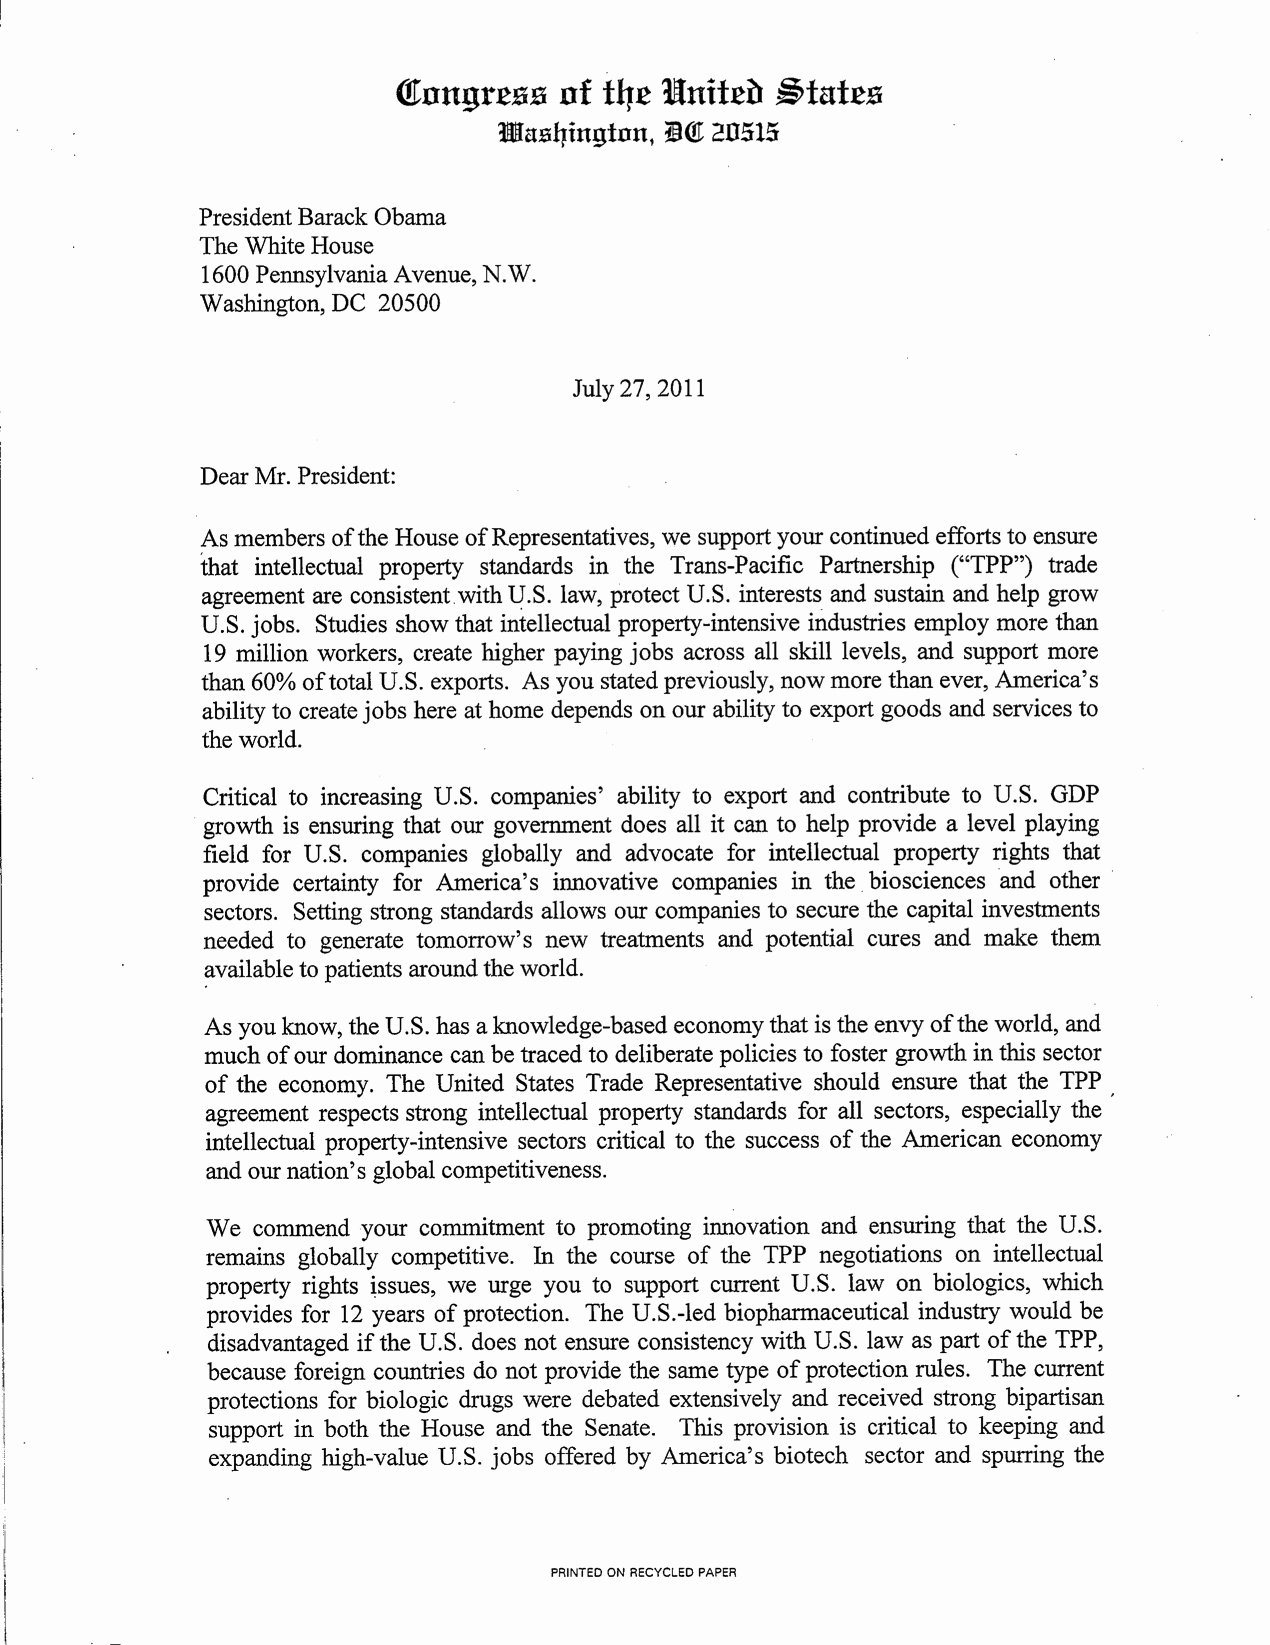 Letter to President format Unique U S Congressman Michael C Burgess 26th District Texas